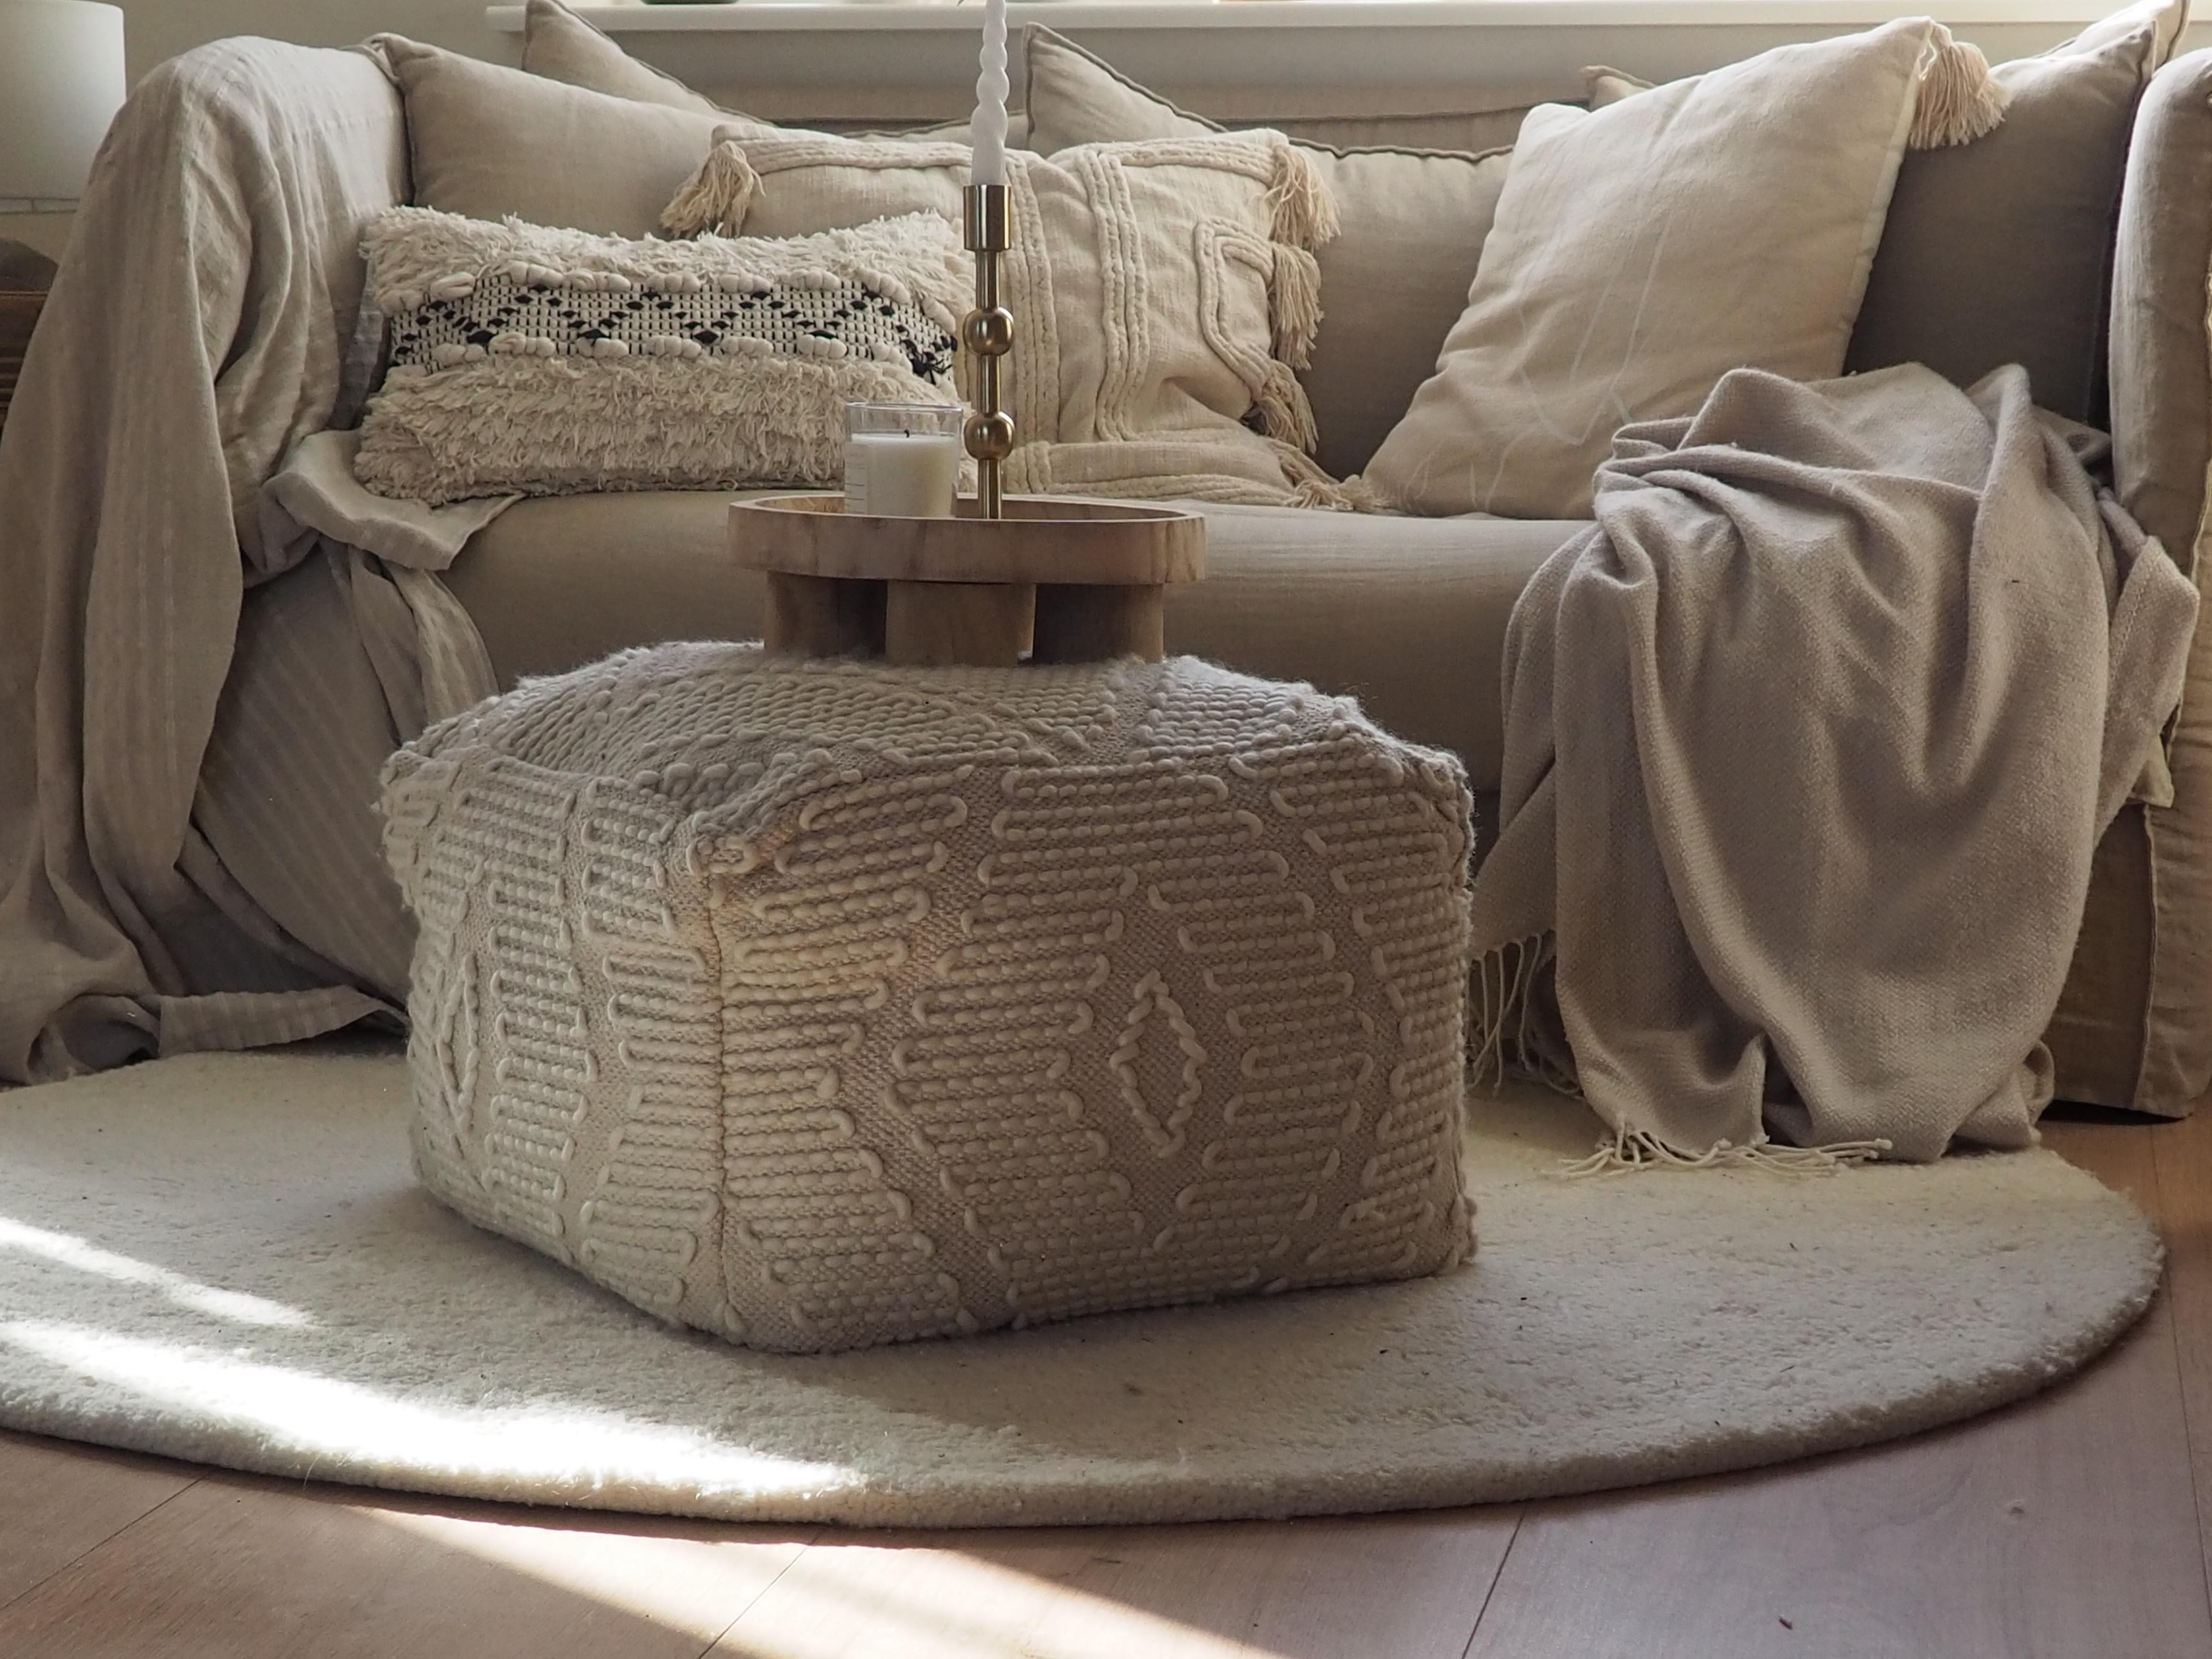 Happy Sunday! 

#wohnzimmer #leseecke #white
#sofa #couch #couchstyle #kissen #deko #dekoration #beige